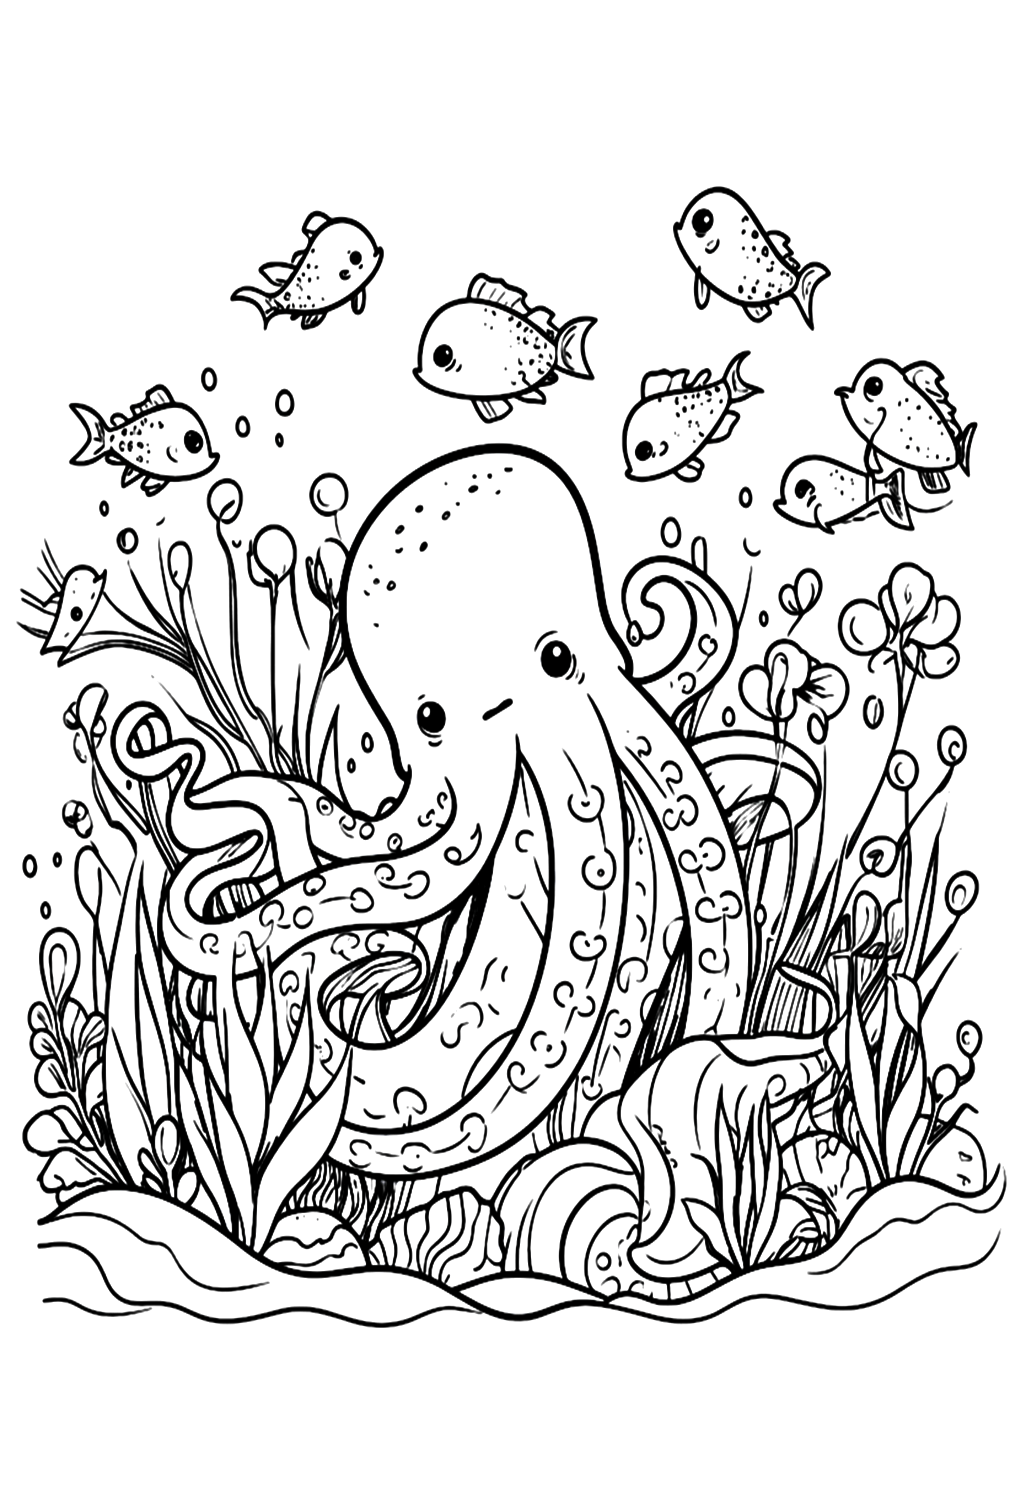 Páginas para colorear de pulpo imprimibles de Octopus